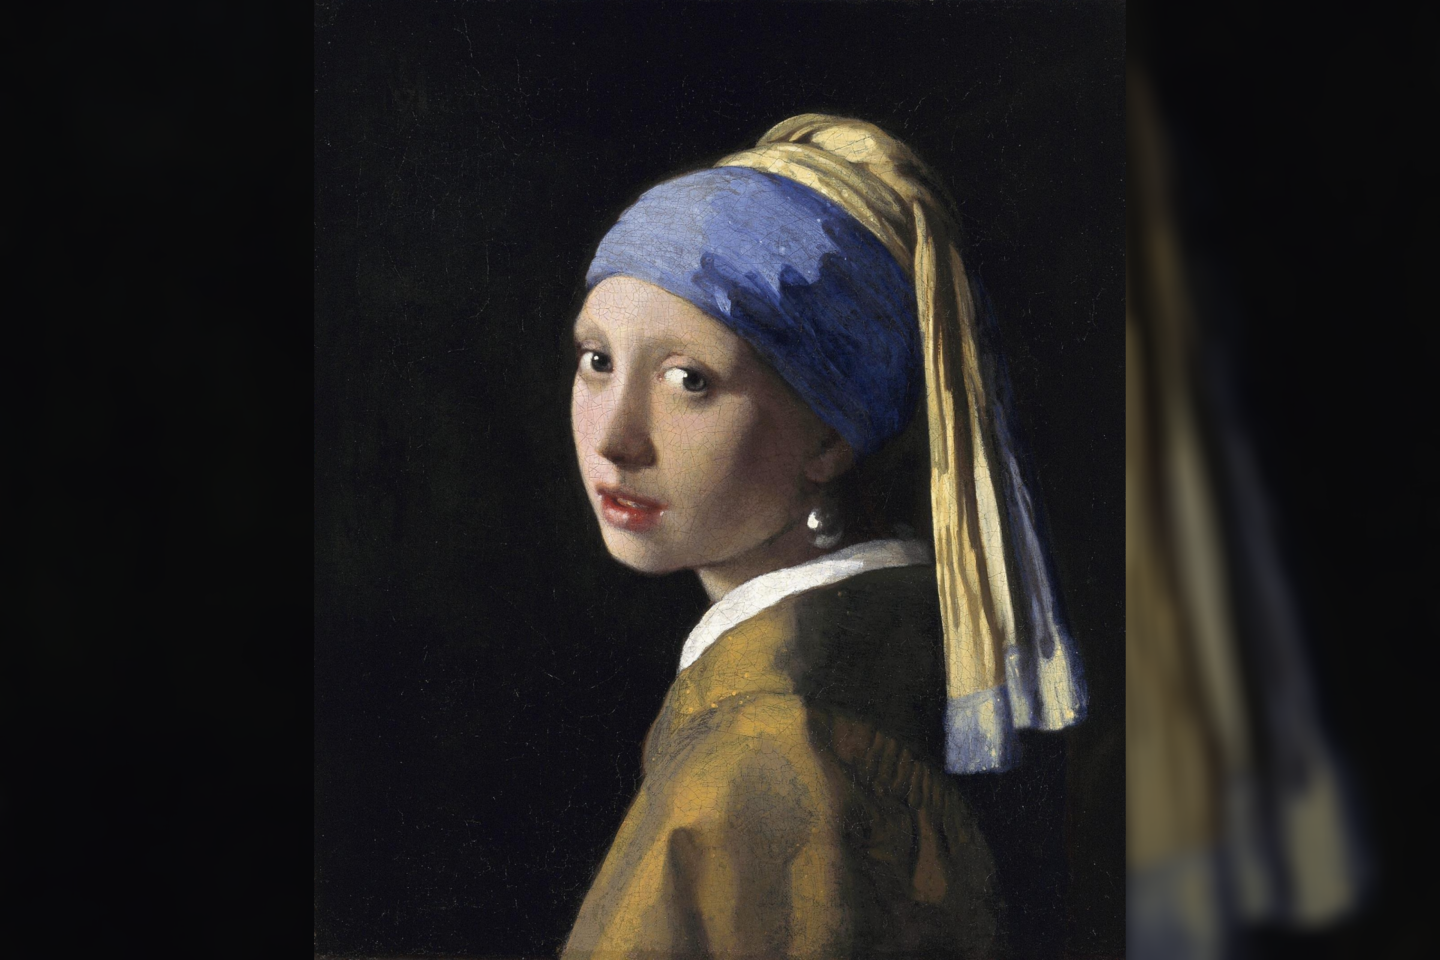  Johanneso Vermeerio paveikslas „Mergina su perlo auskaru“ dažnai vadinamas „Olandiška Mona Liza“. <br> Johanneso Vermeerio pav. (1665 m.)